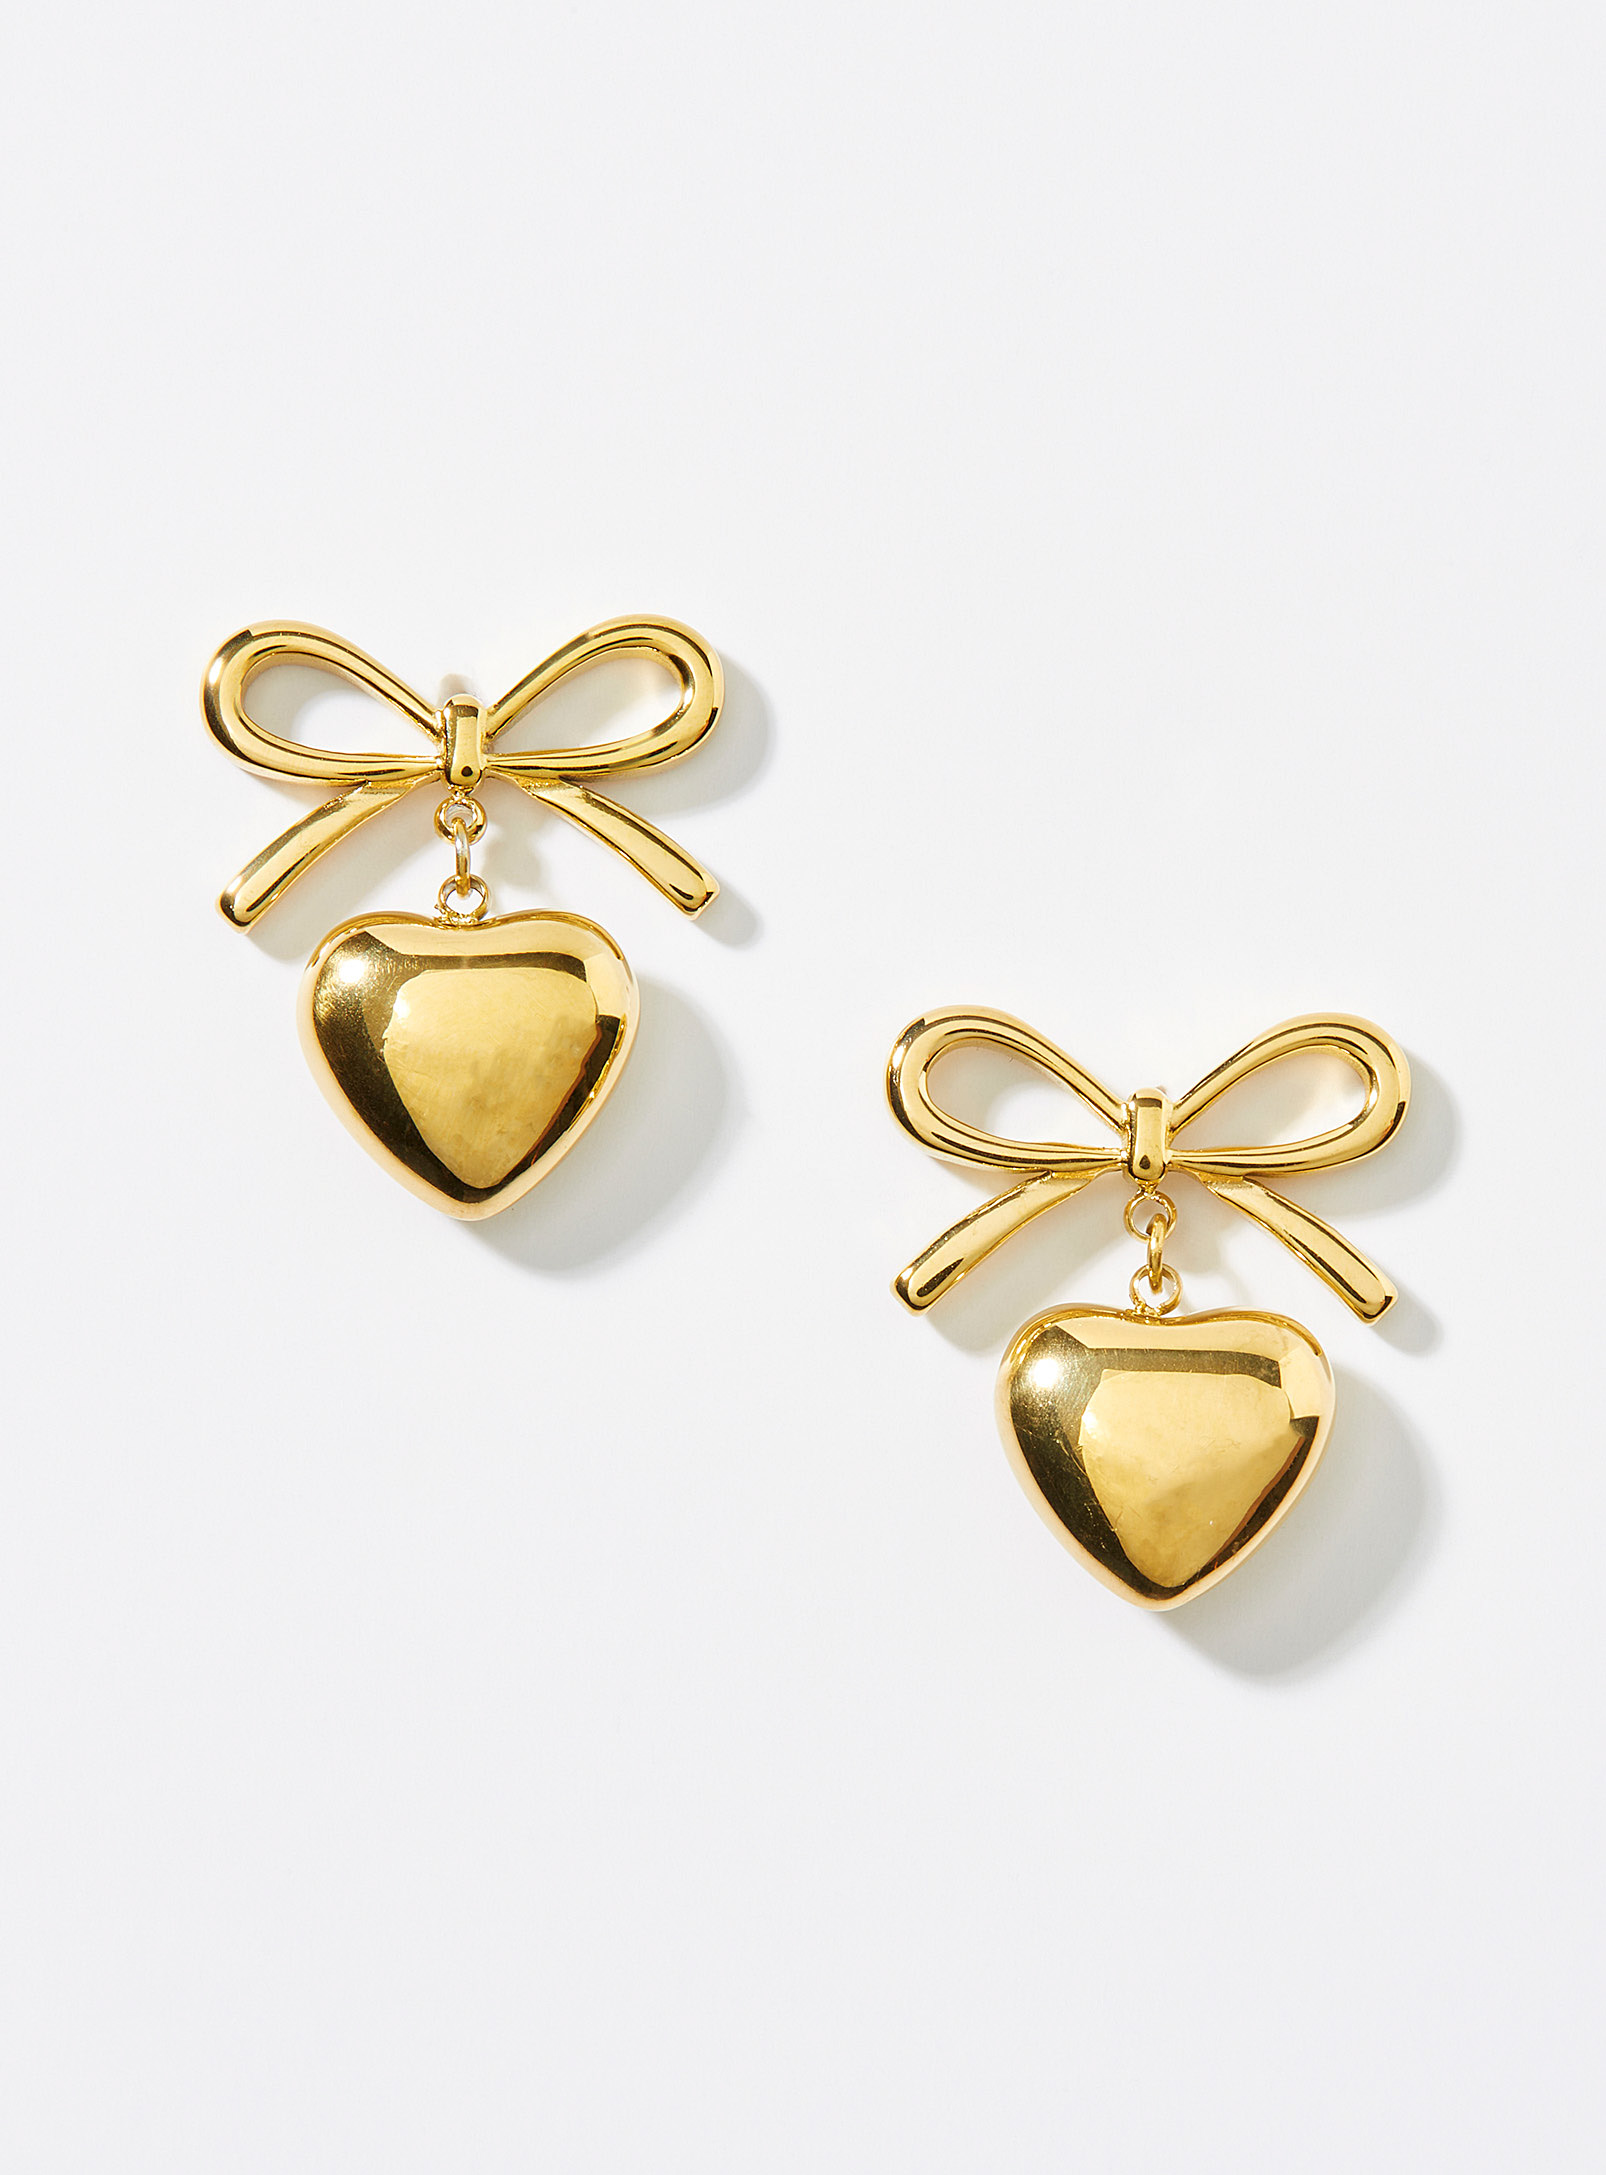 Simons - Women's Charming heart earrings